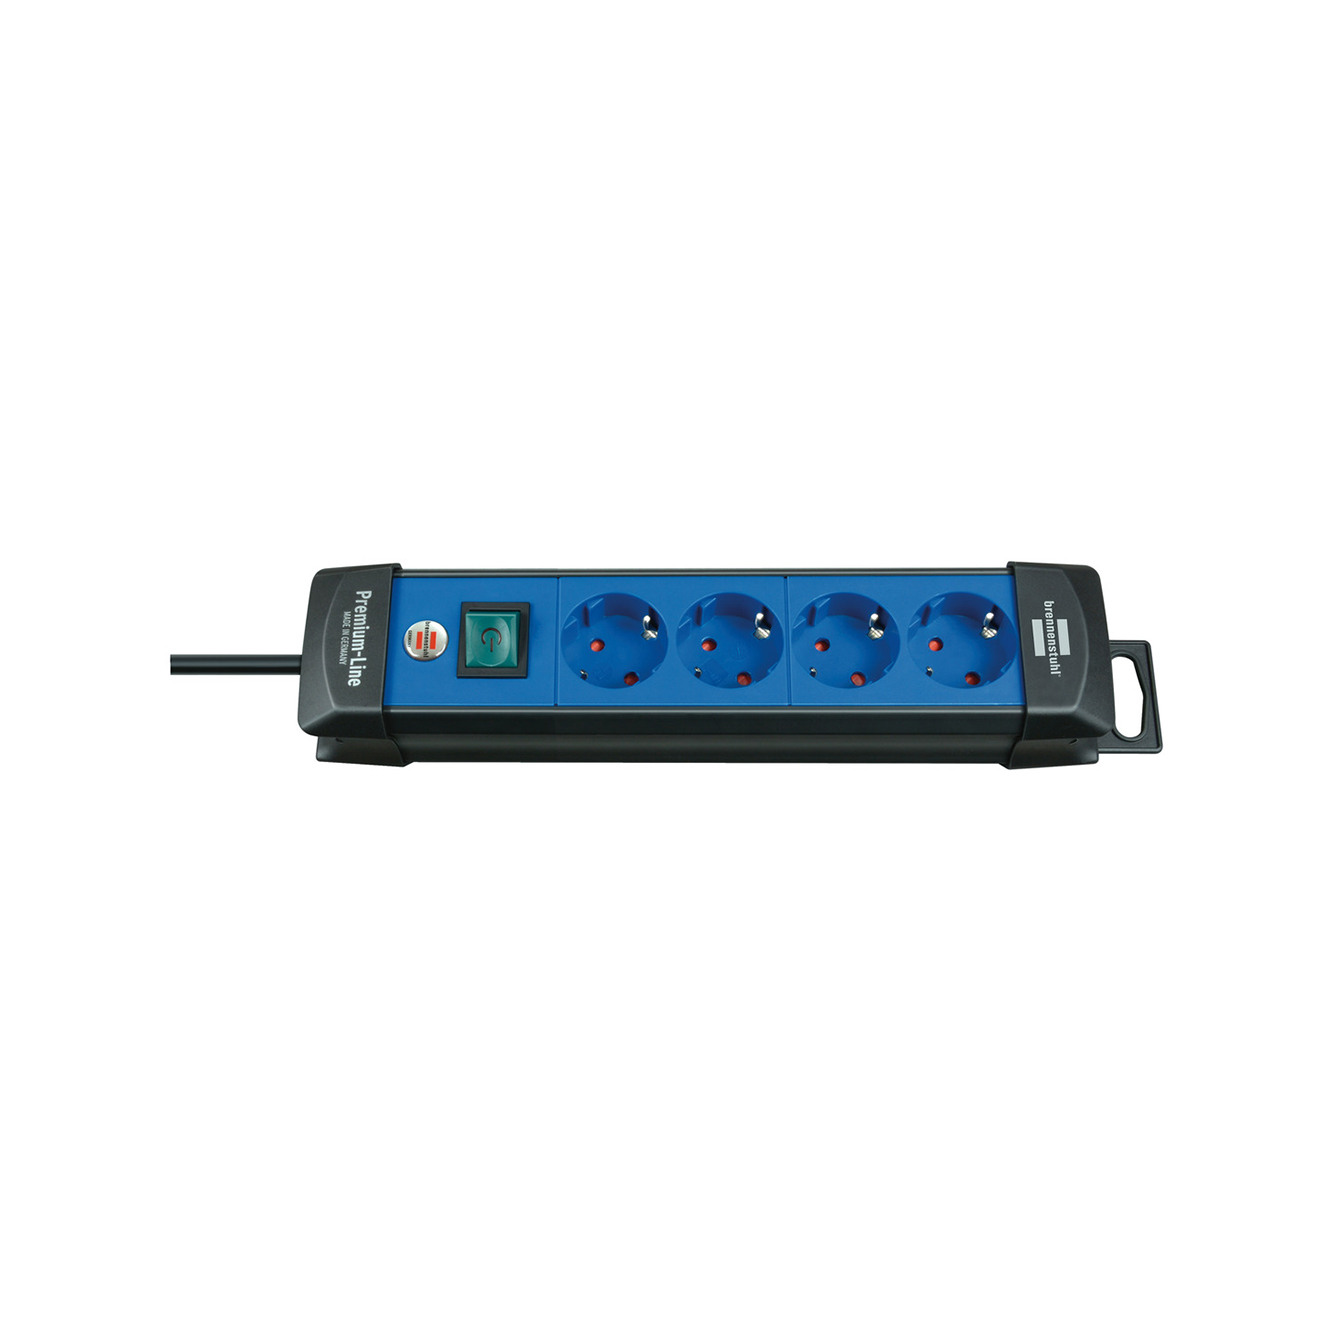 Удлинитель Brennenstuhl Premium-Line 4 розетки кабель 1,8 м H05VV-F 3G1,5 черный/синий 1951340100